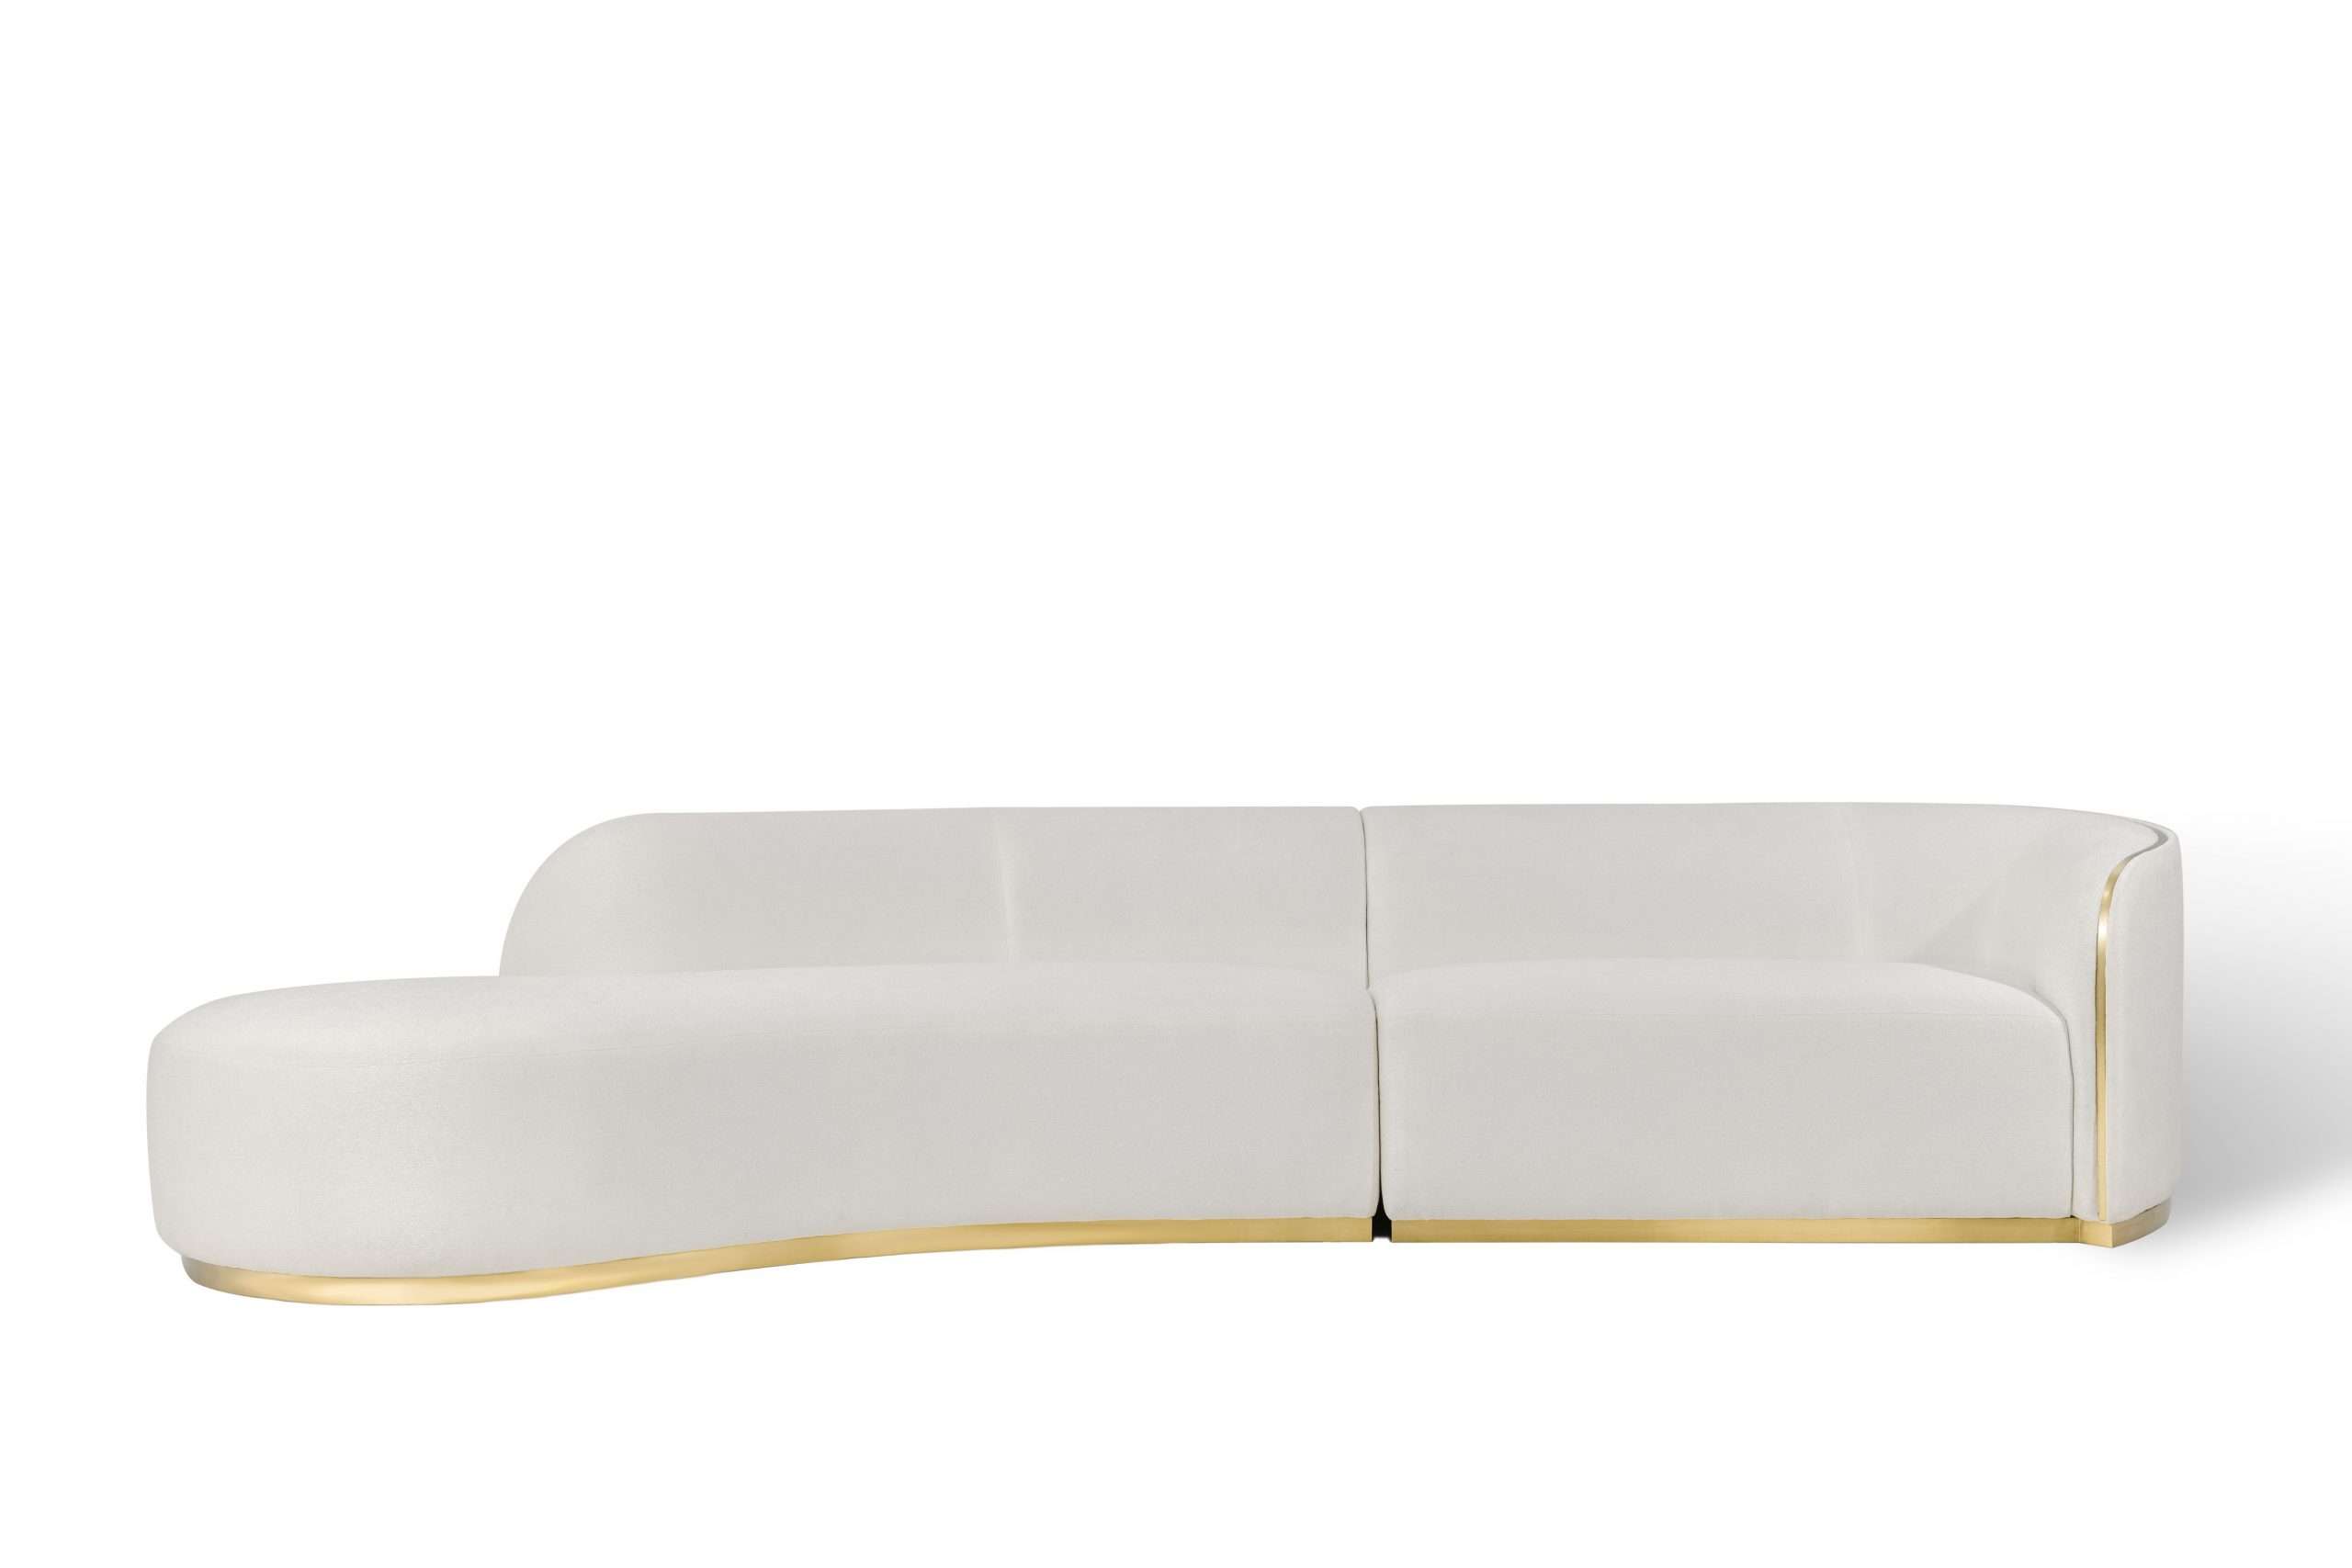 CARILO Sectional Sofa